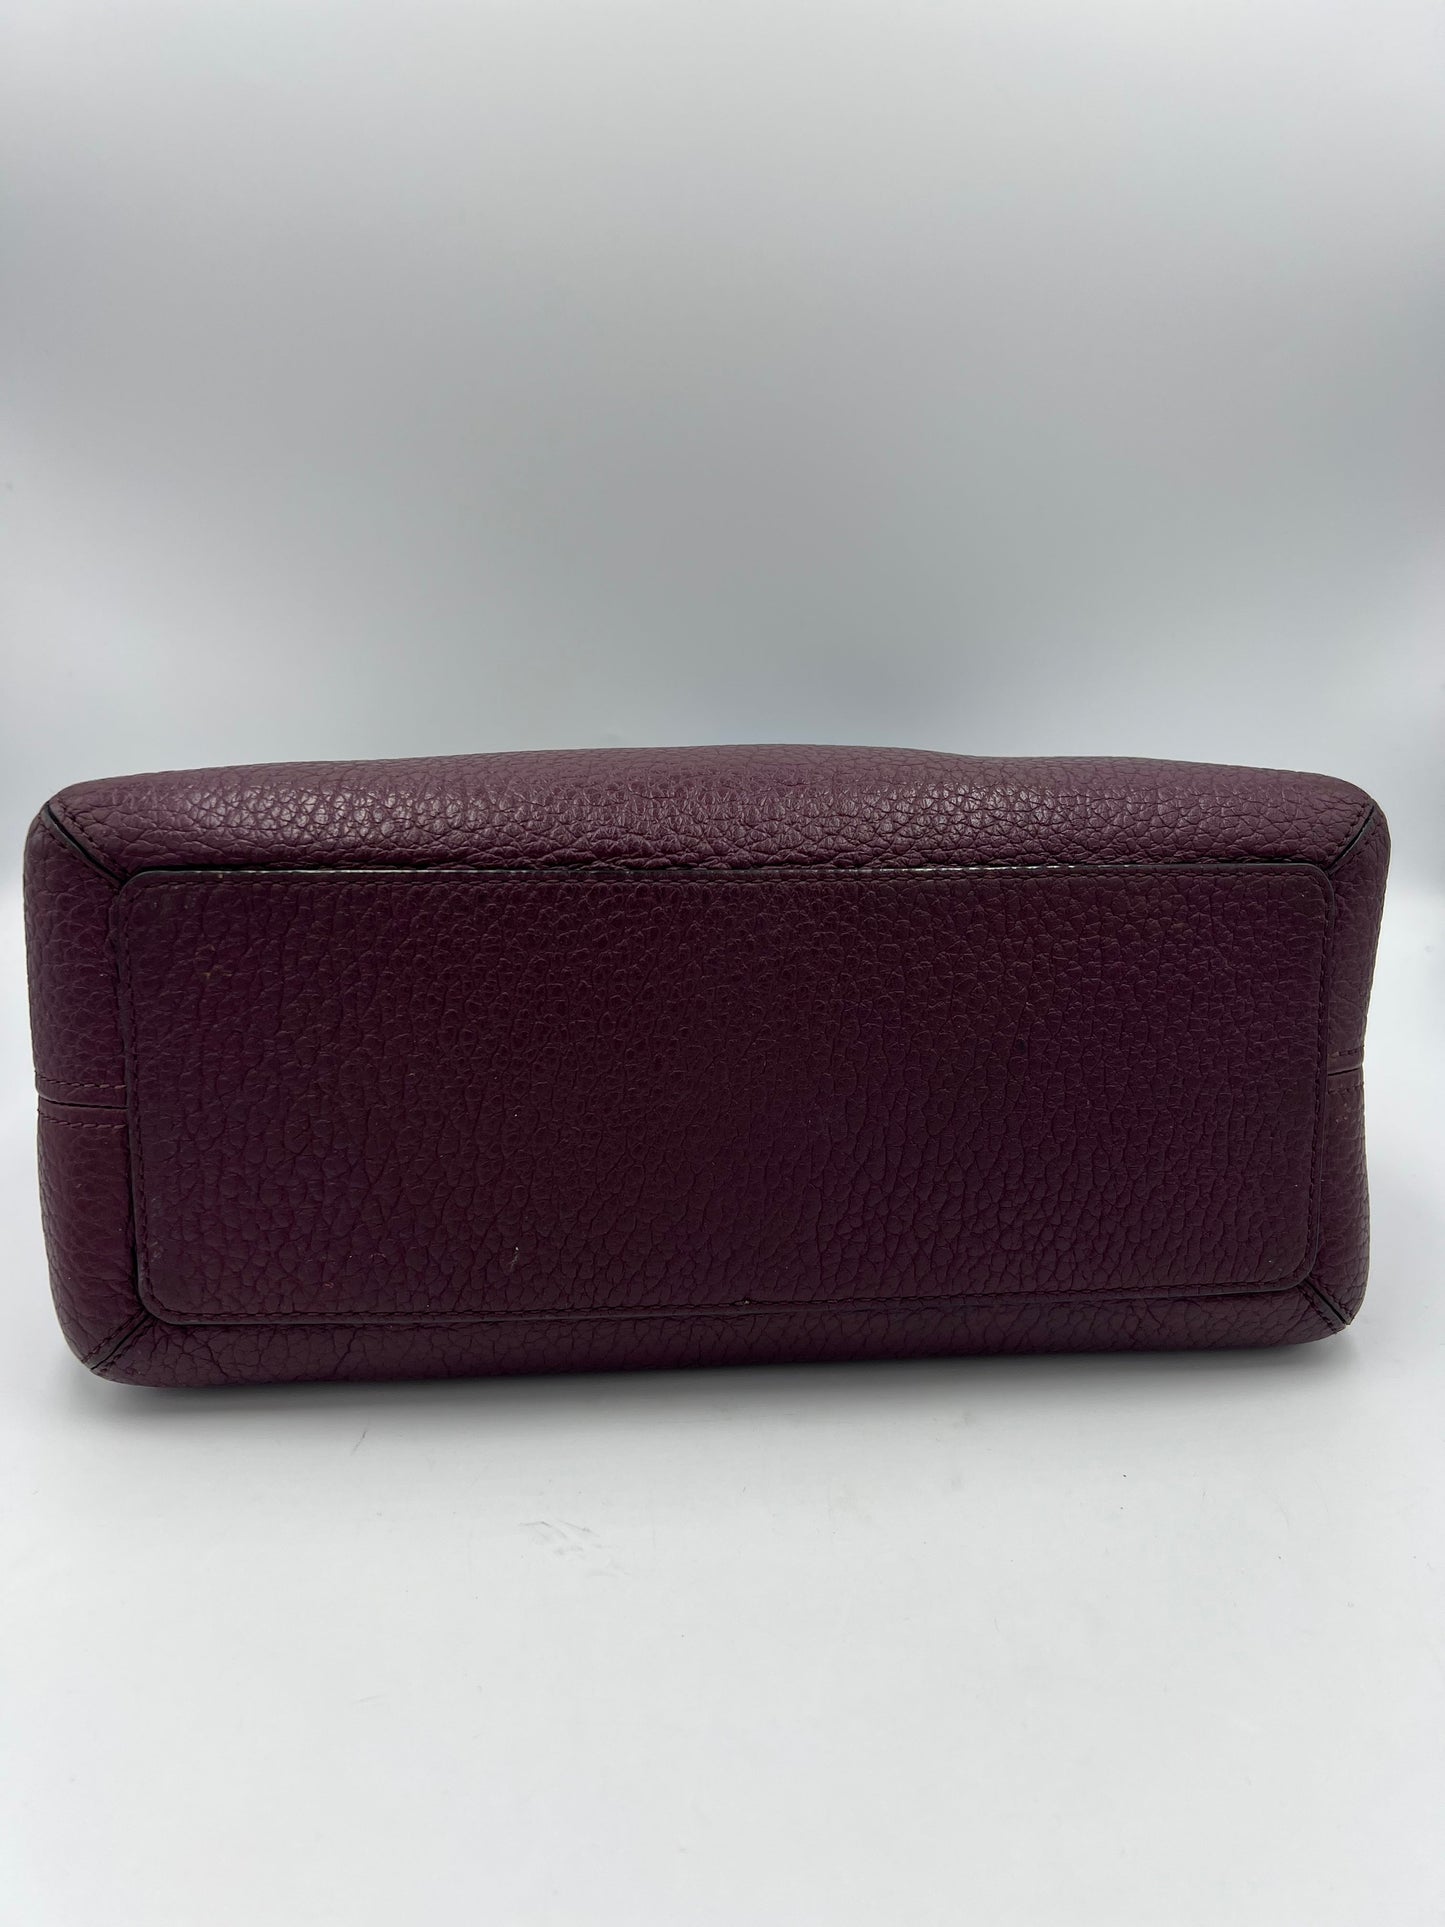 Handbag Leather Designer By Kate Spade